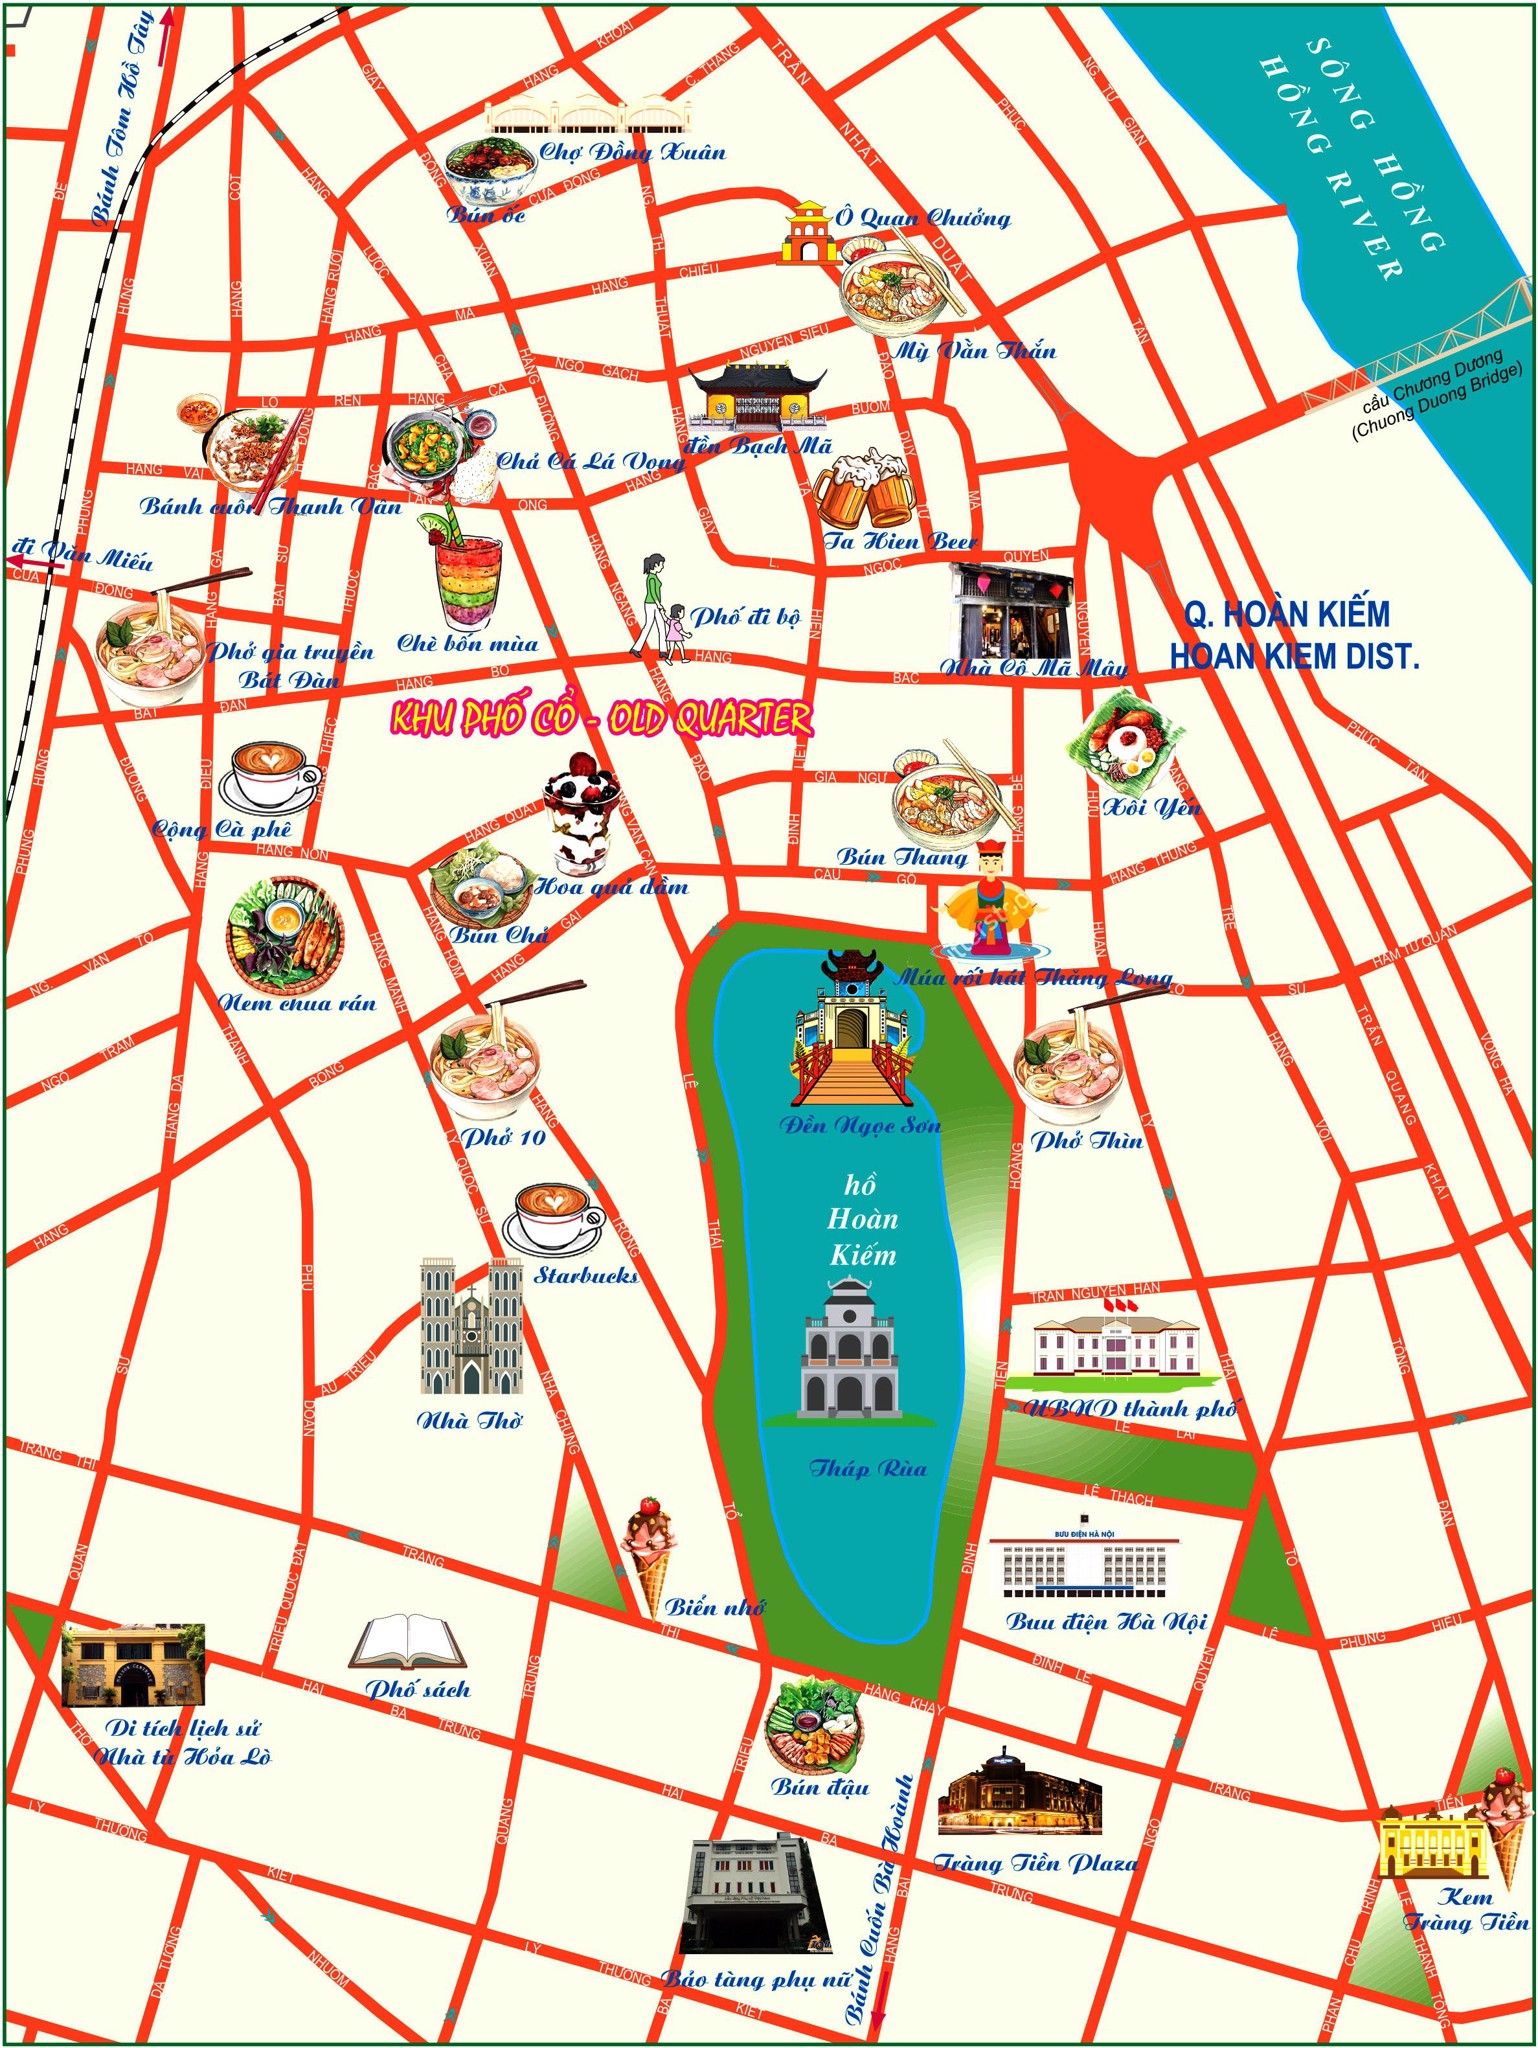 Bạn yêu thích ẩm thực phố cổ của Hà Nội? Hãy xem ngay bản đồ ẩm thực phố cổ Hà Nội mới nhất năm 2024 để tìm hiểu thêm về những quán ăn truyền thống, đặc sản Hà Thành hấp dẫn. Cùng khám phá vẻ đẹp truyền thống của phố cổ Hà Nội, thưởng thức những món ăn ngon tuyệt vời.